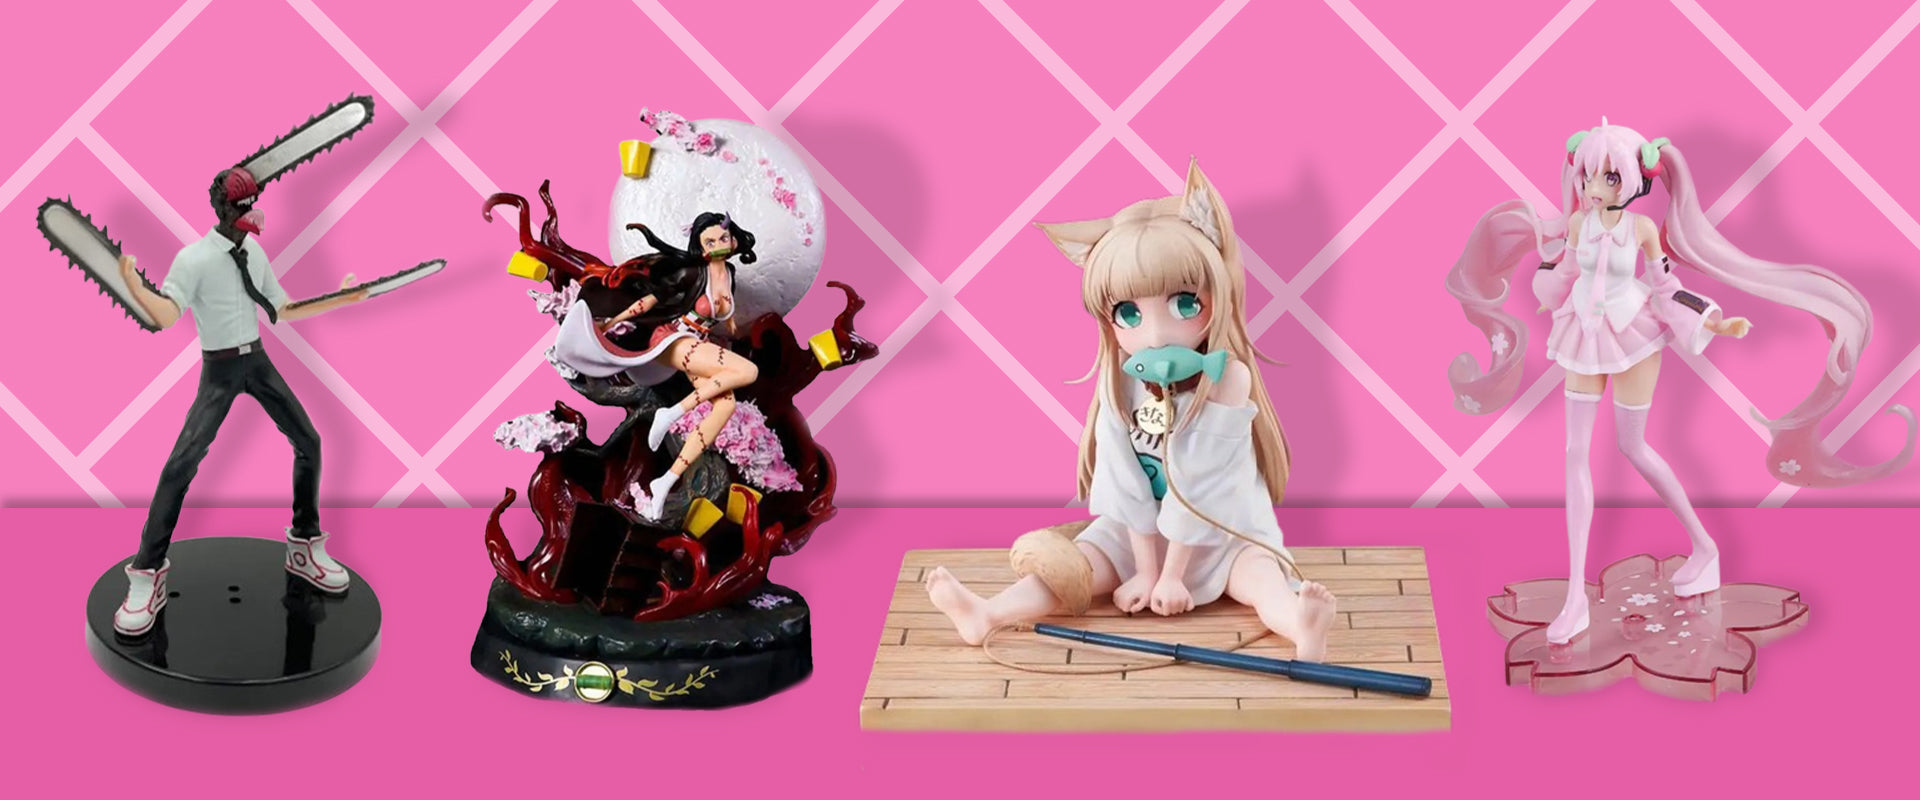 6 Pcs Genshin Impact Figure, Q Version Desk Decoration Anime Action Figure  Cute Cake Topper for Game Fans - Walmart.com